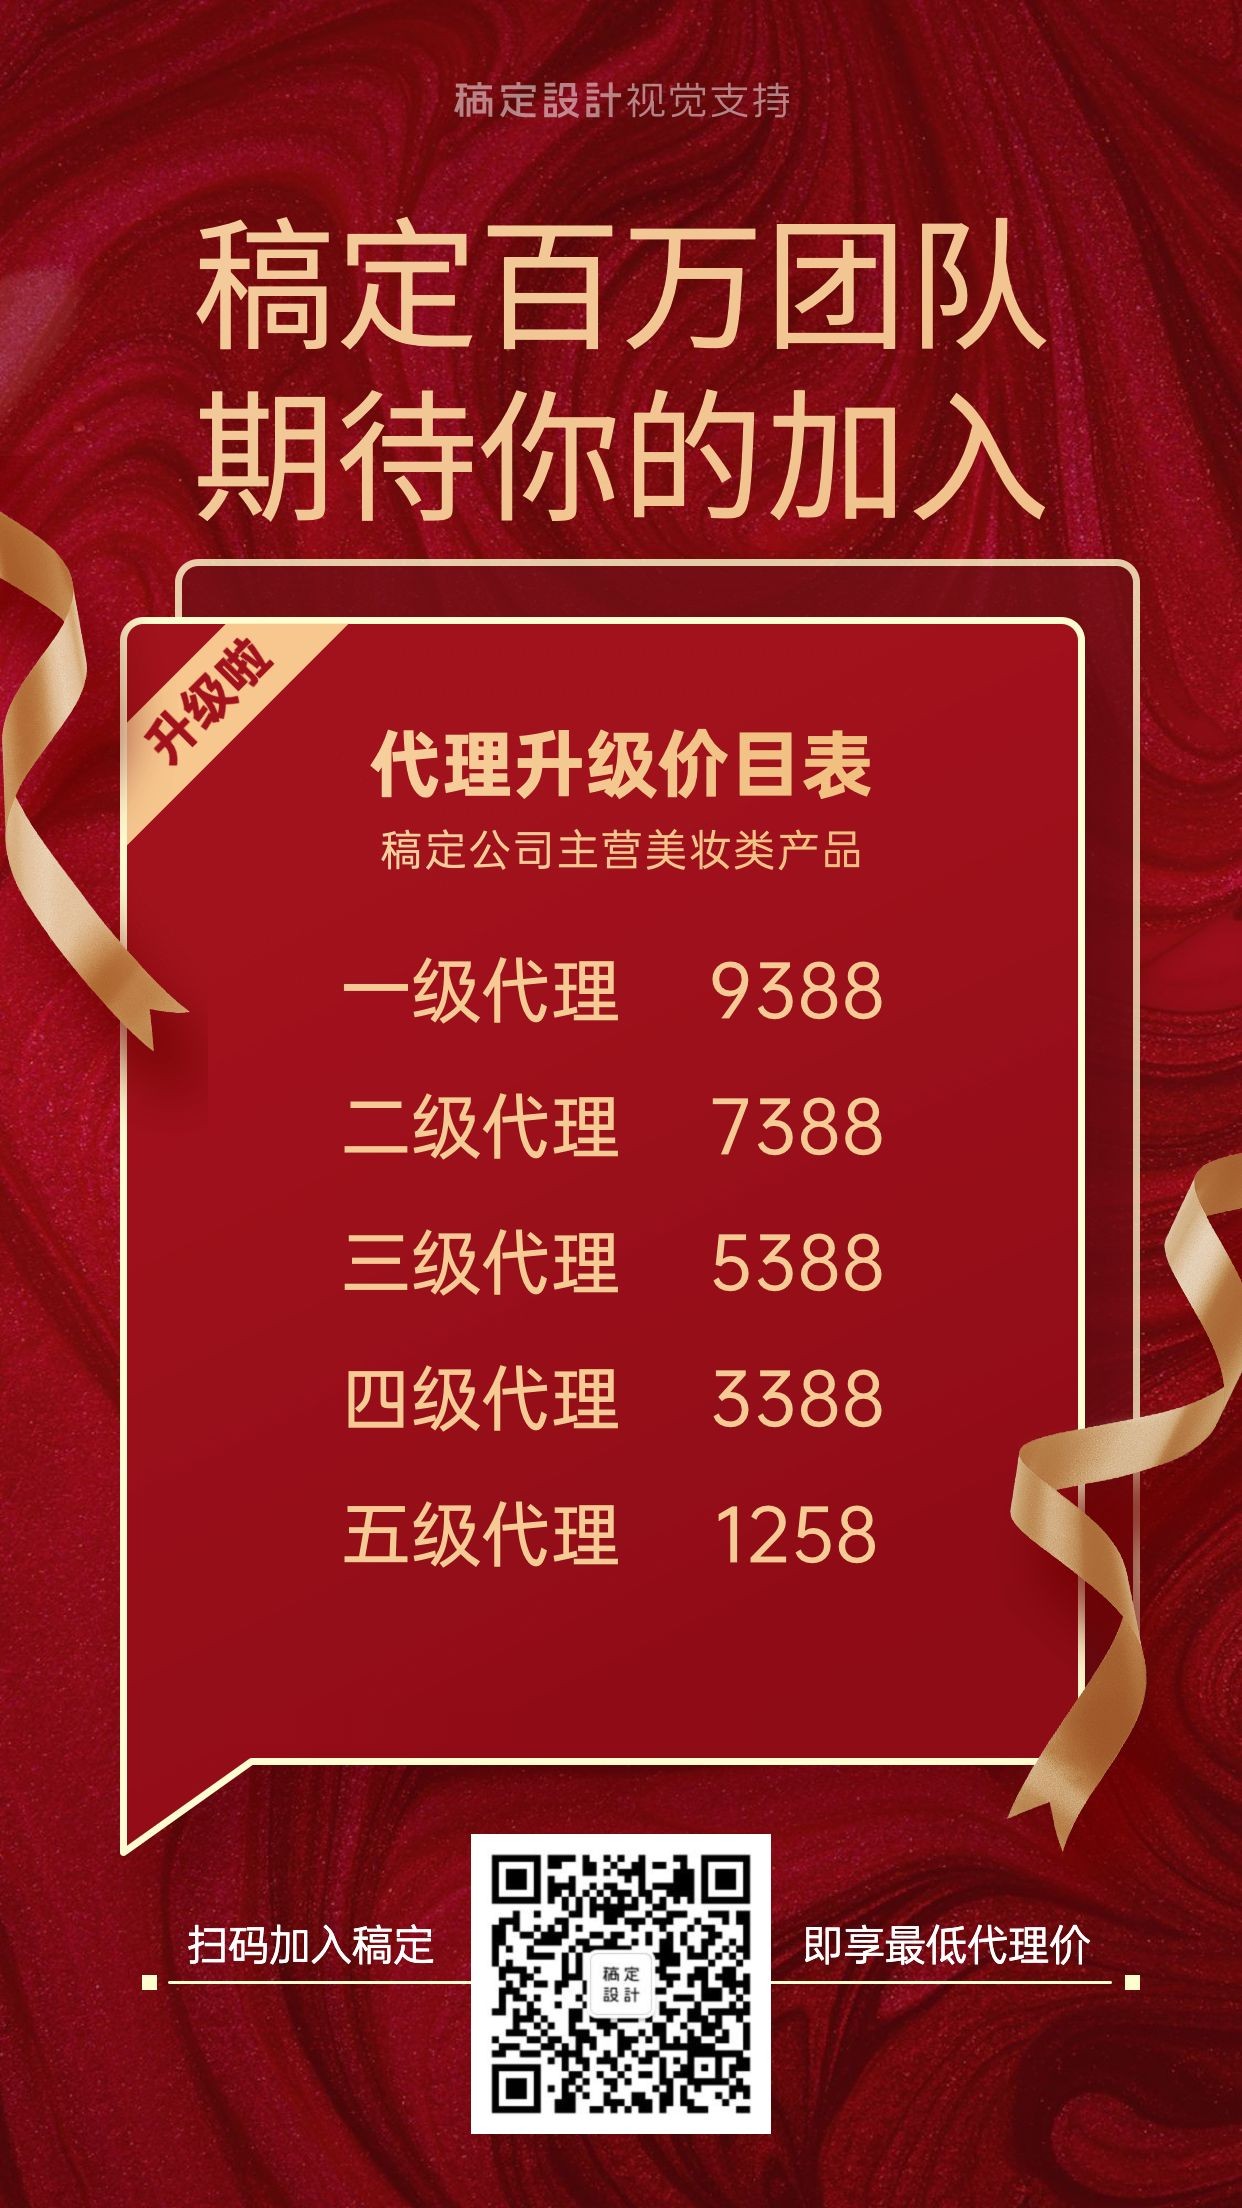 喜庆红色展示代理价格表营销海报